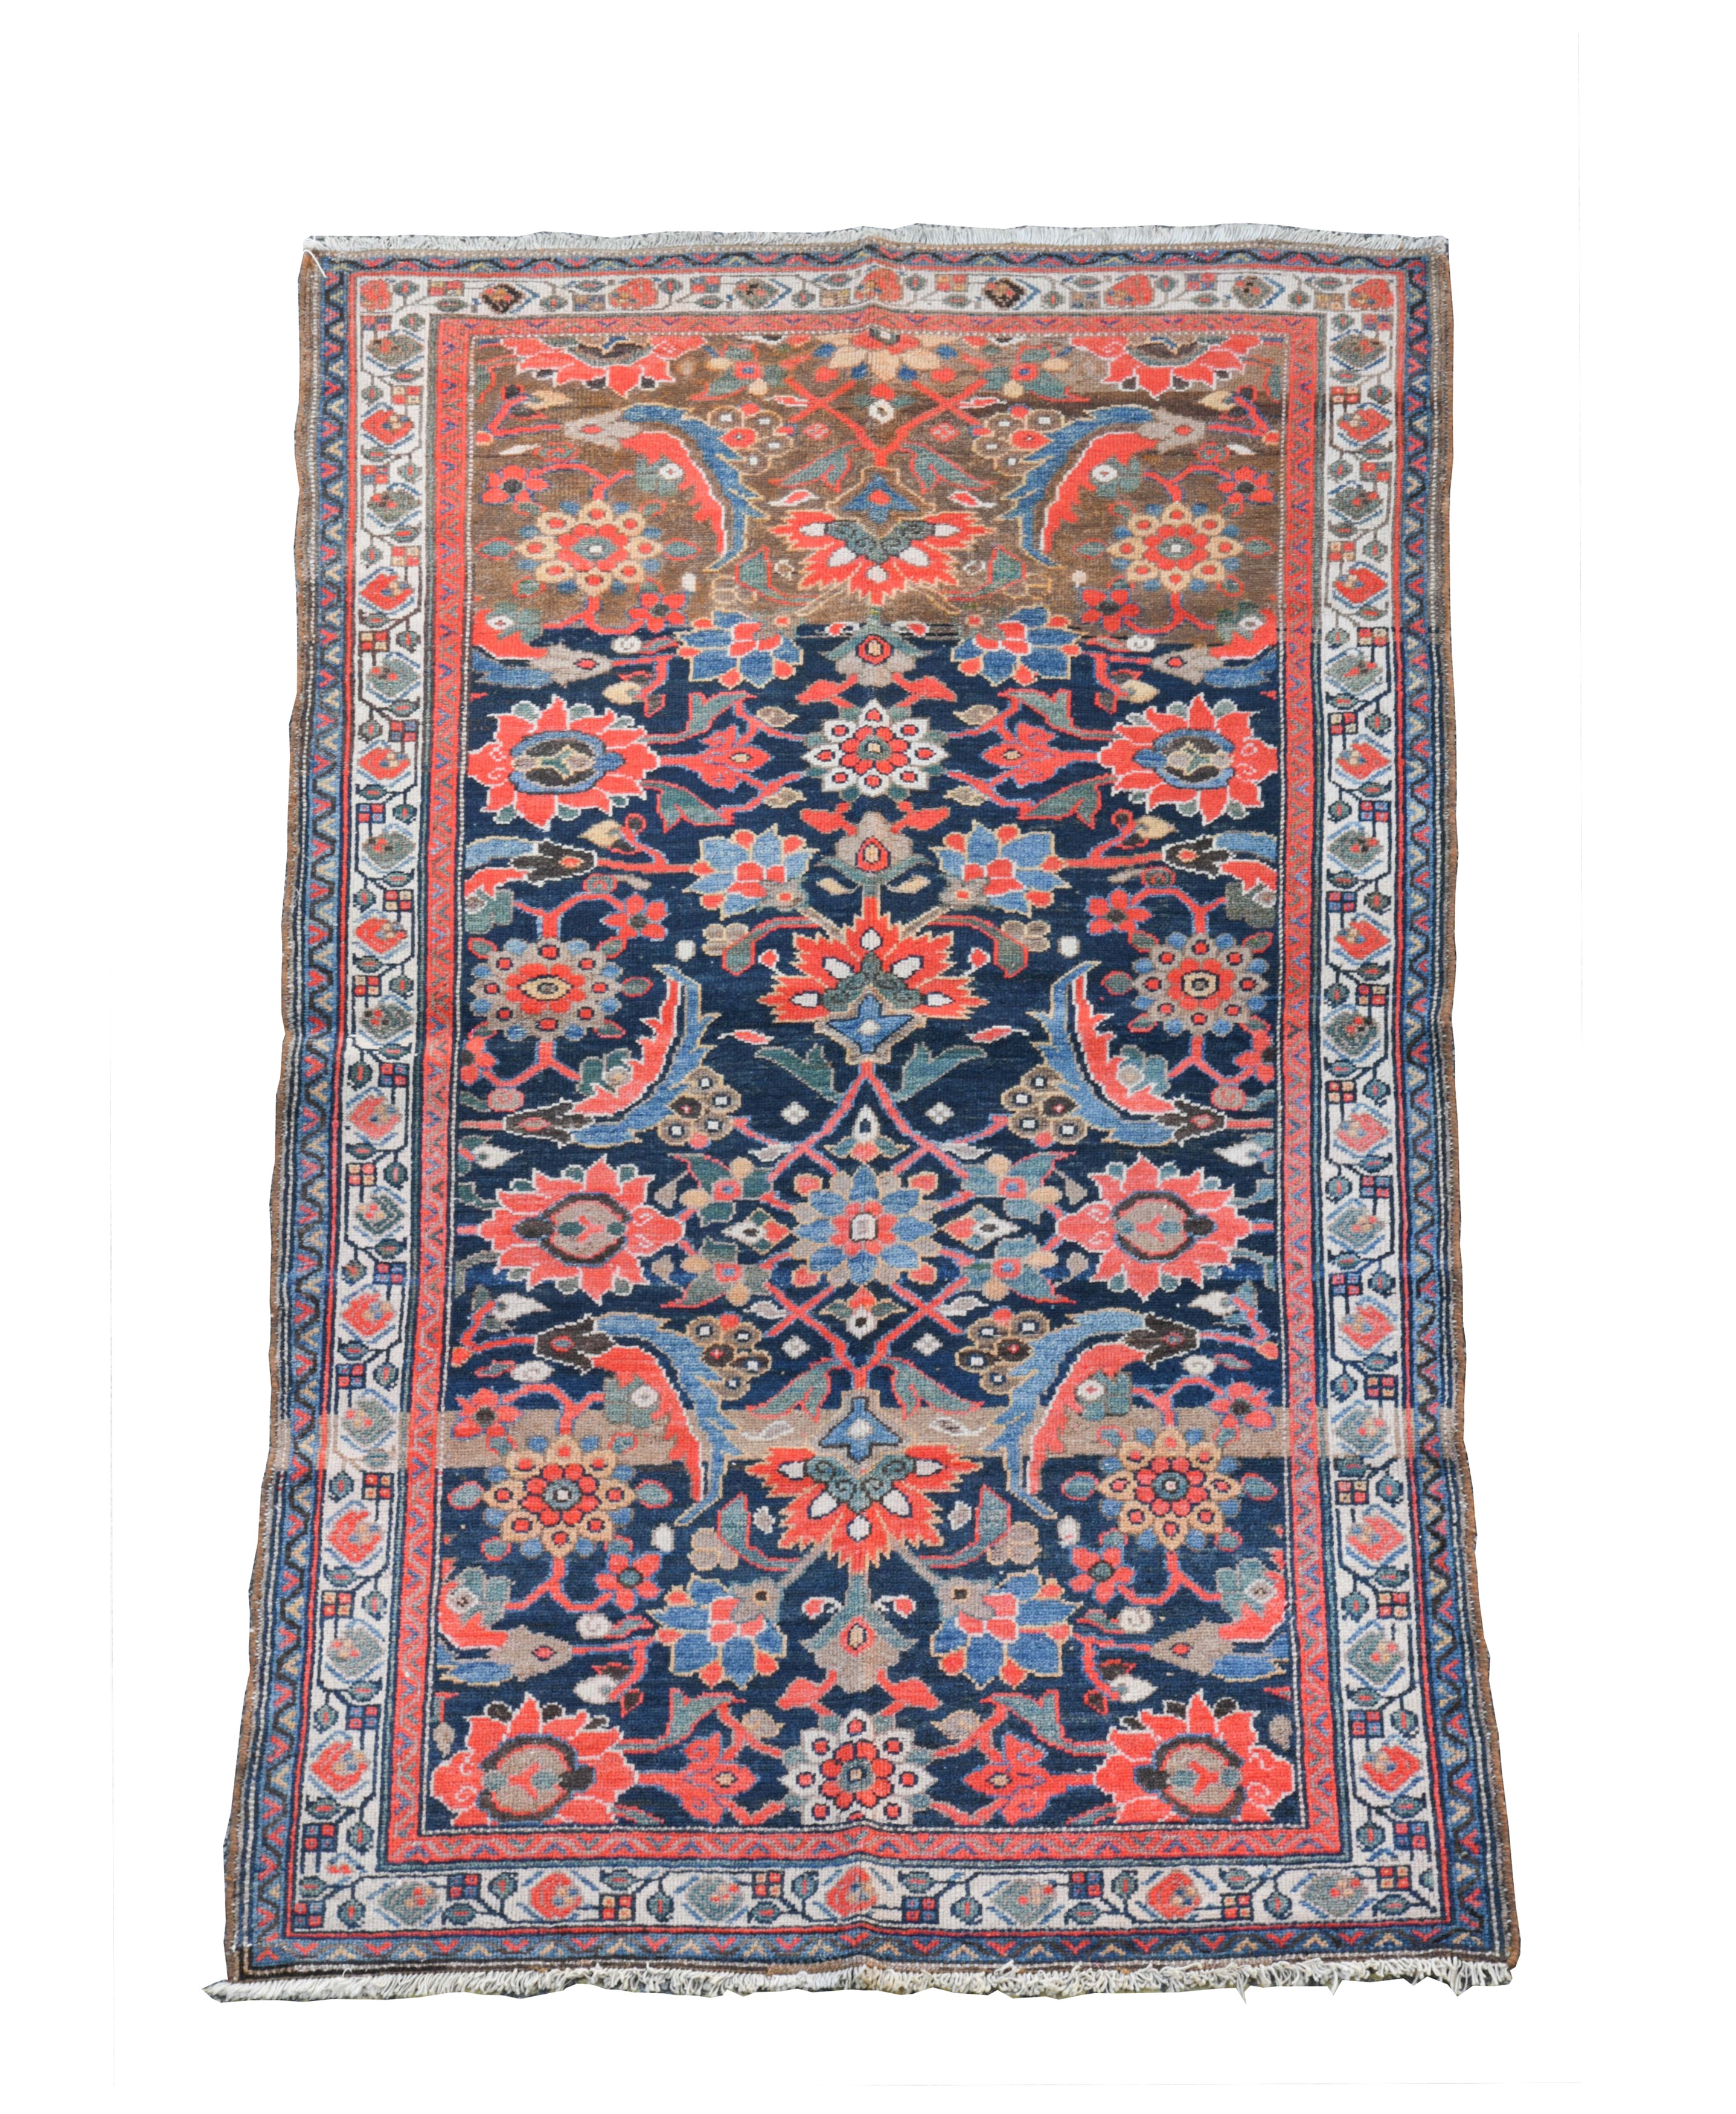 A malayer 'Mahi' design rug,